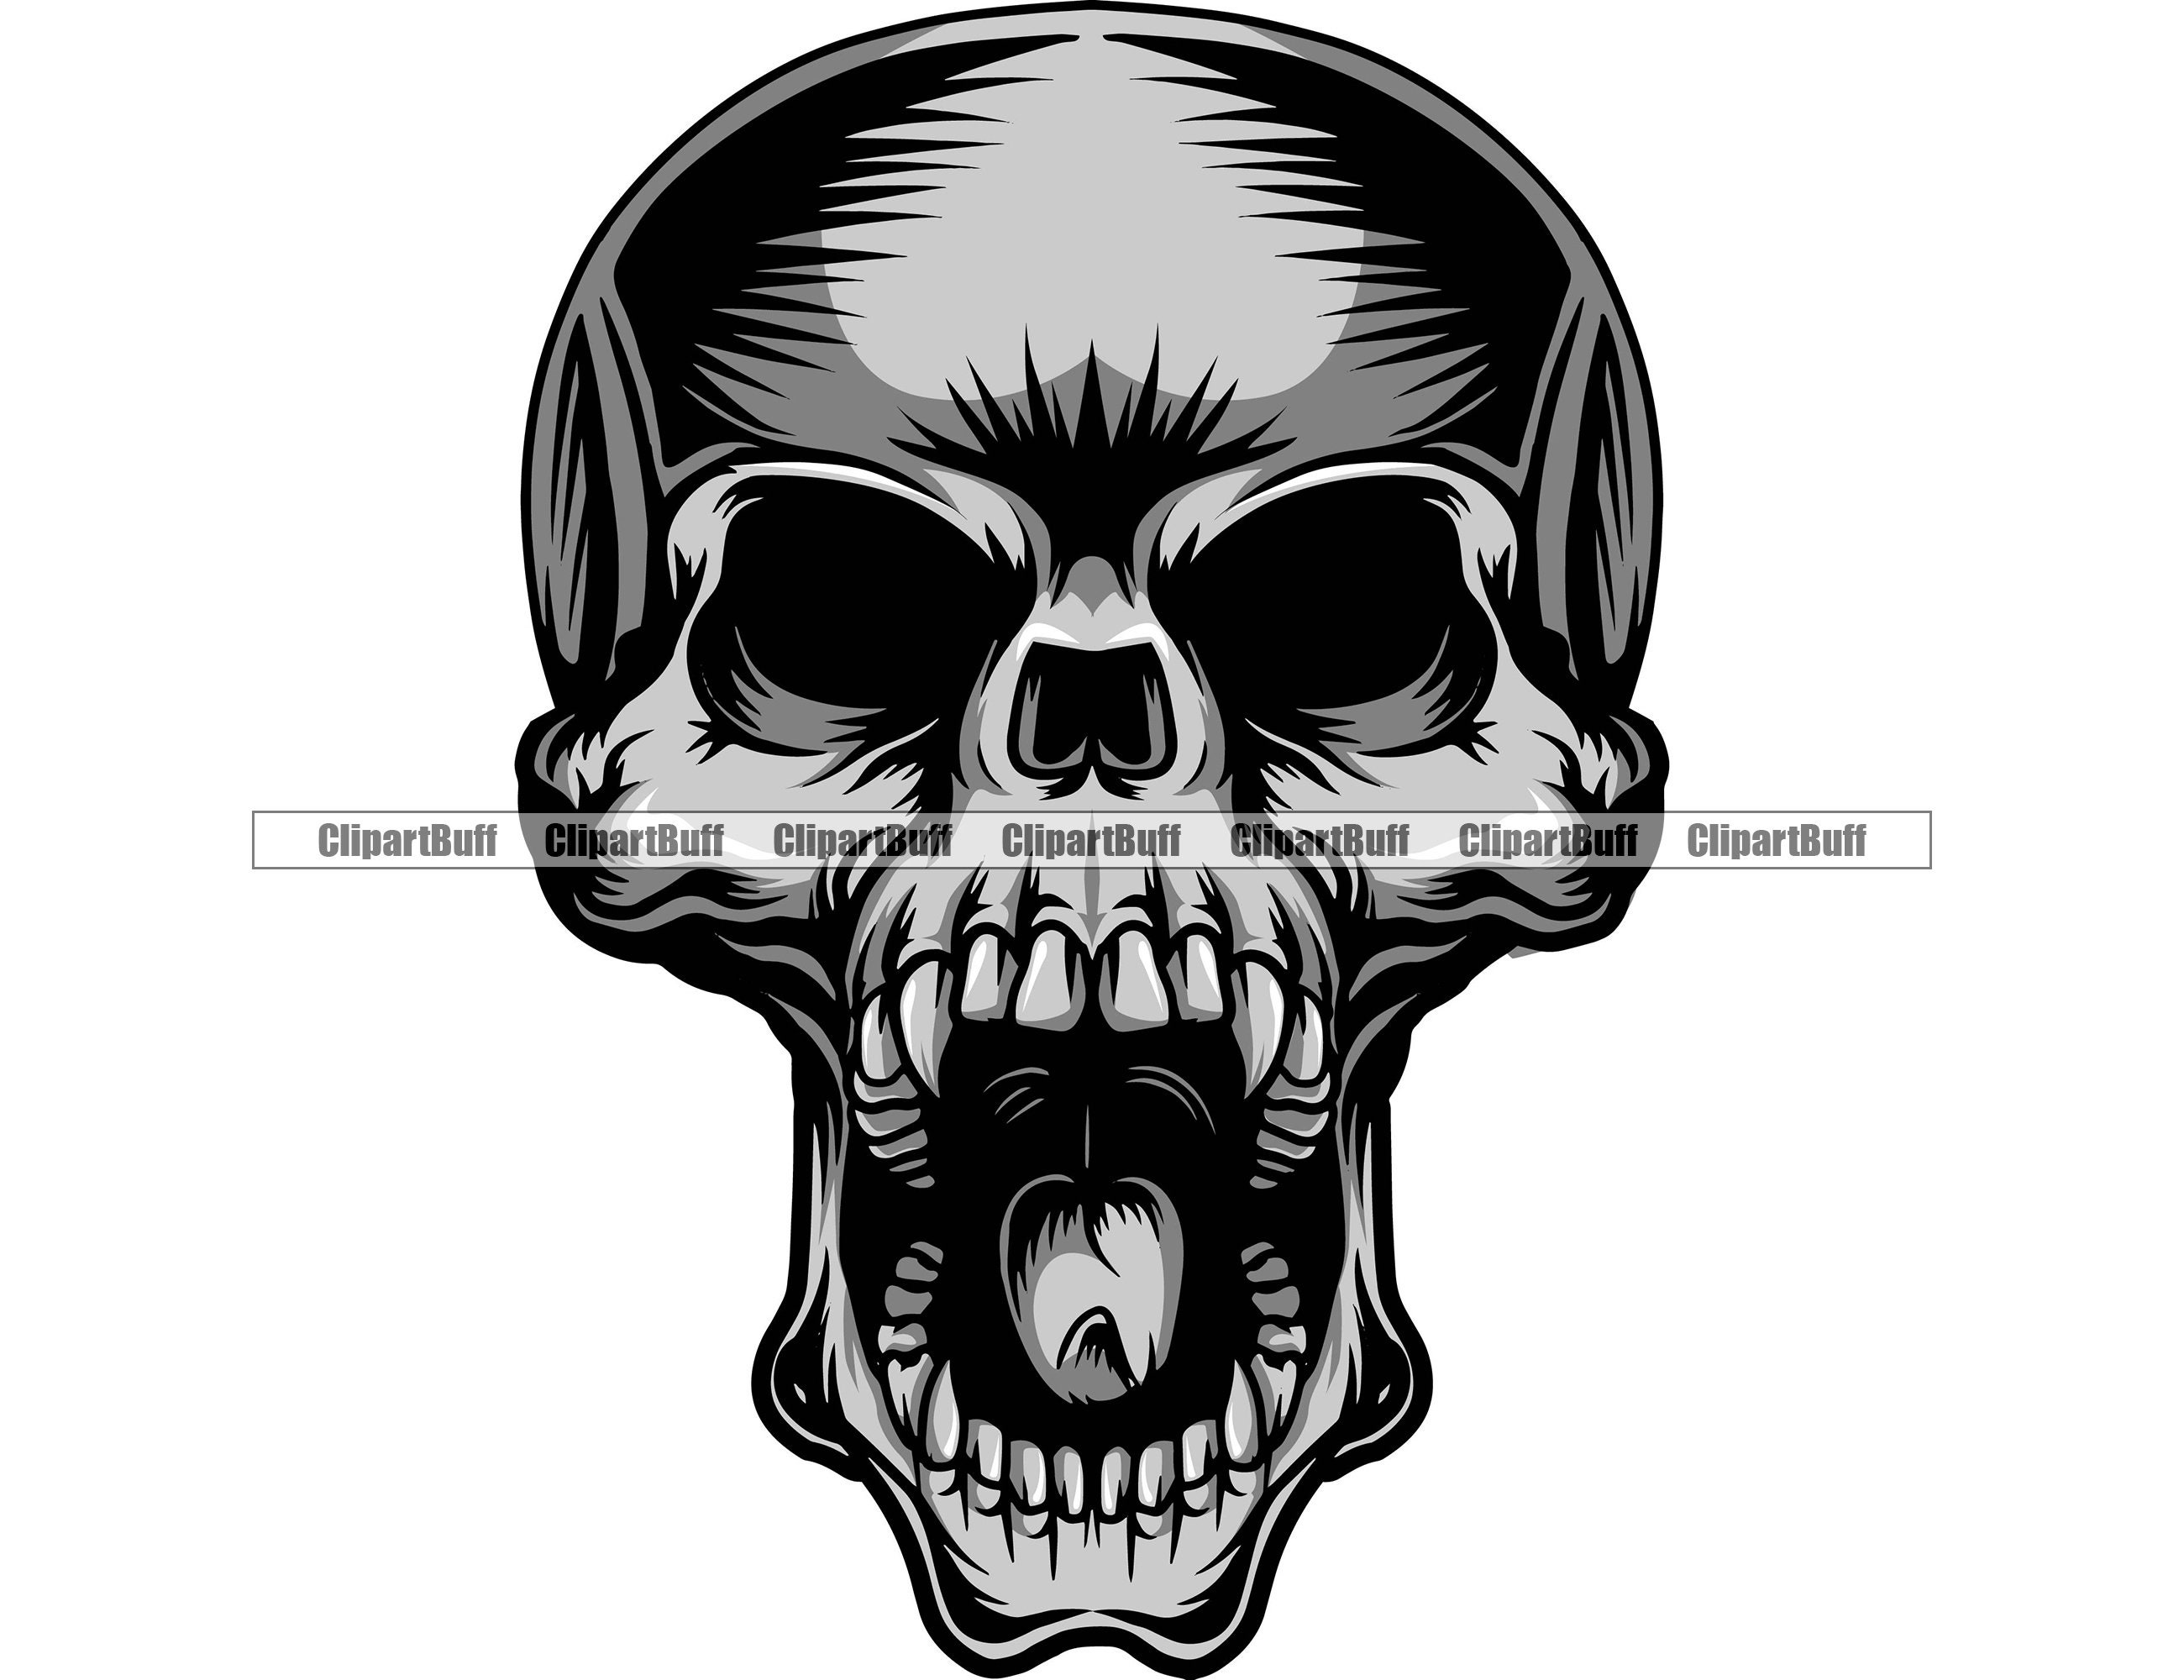 Tribal skull tattoo design black outline vector on white background Skull  with floral design vector 22936959 Vector Art at Vecteezy